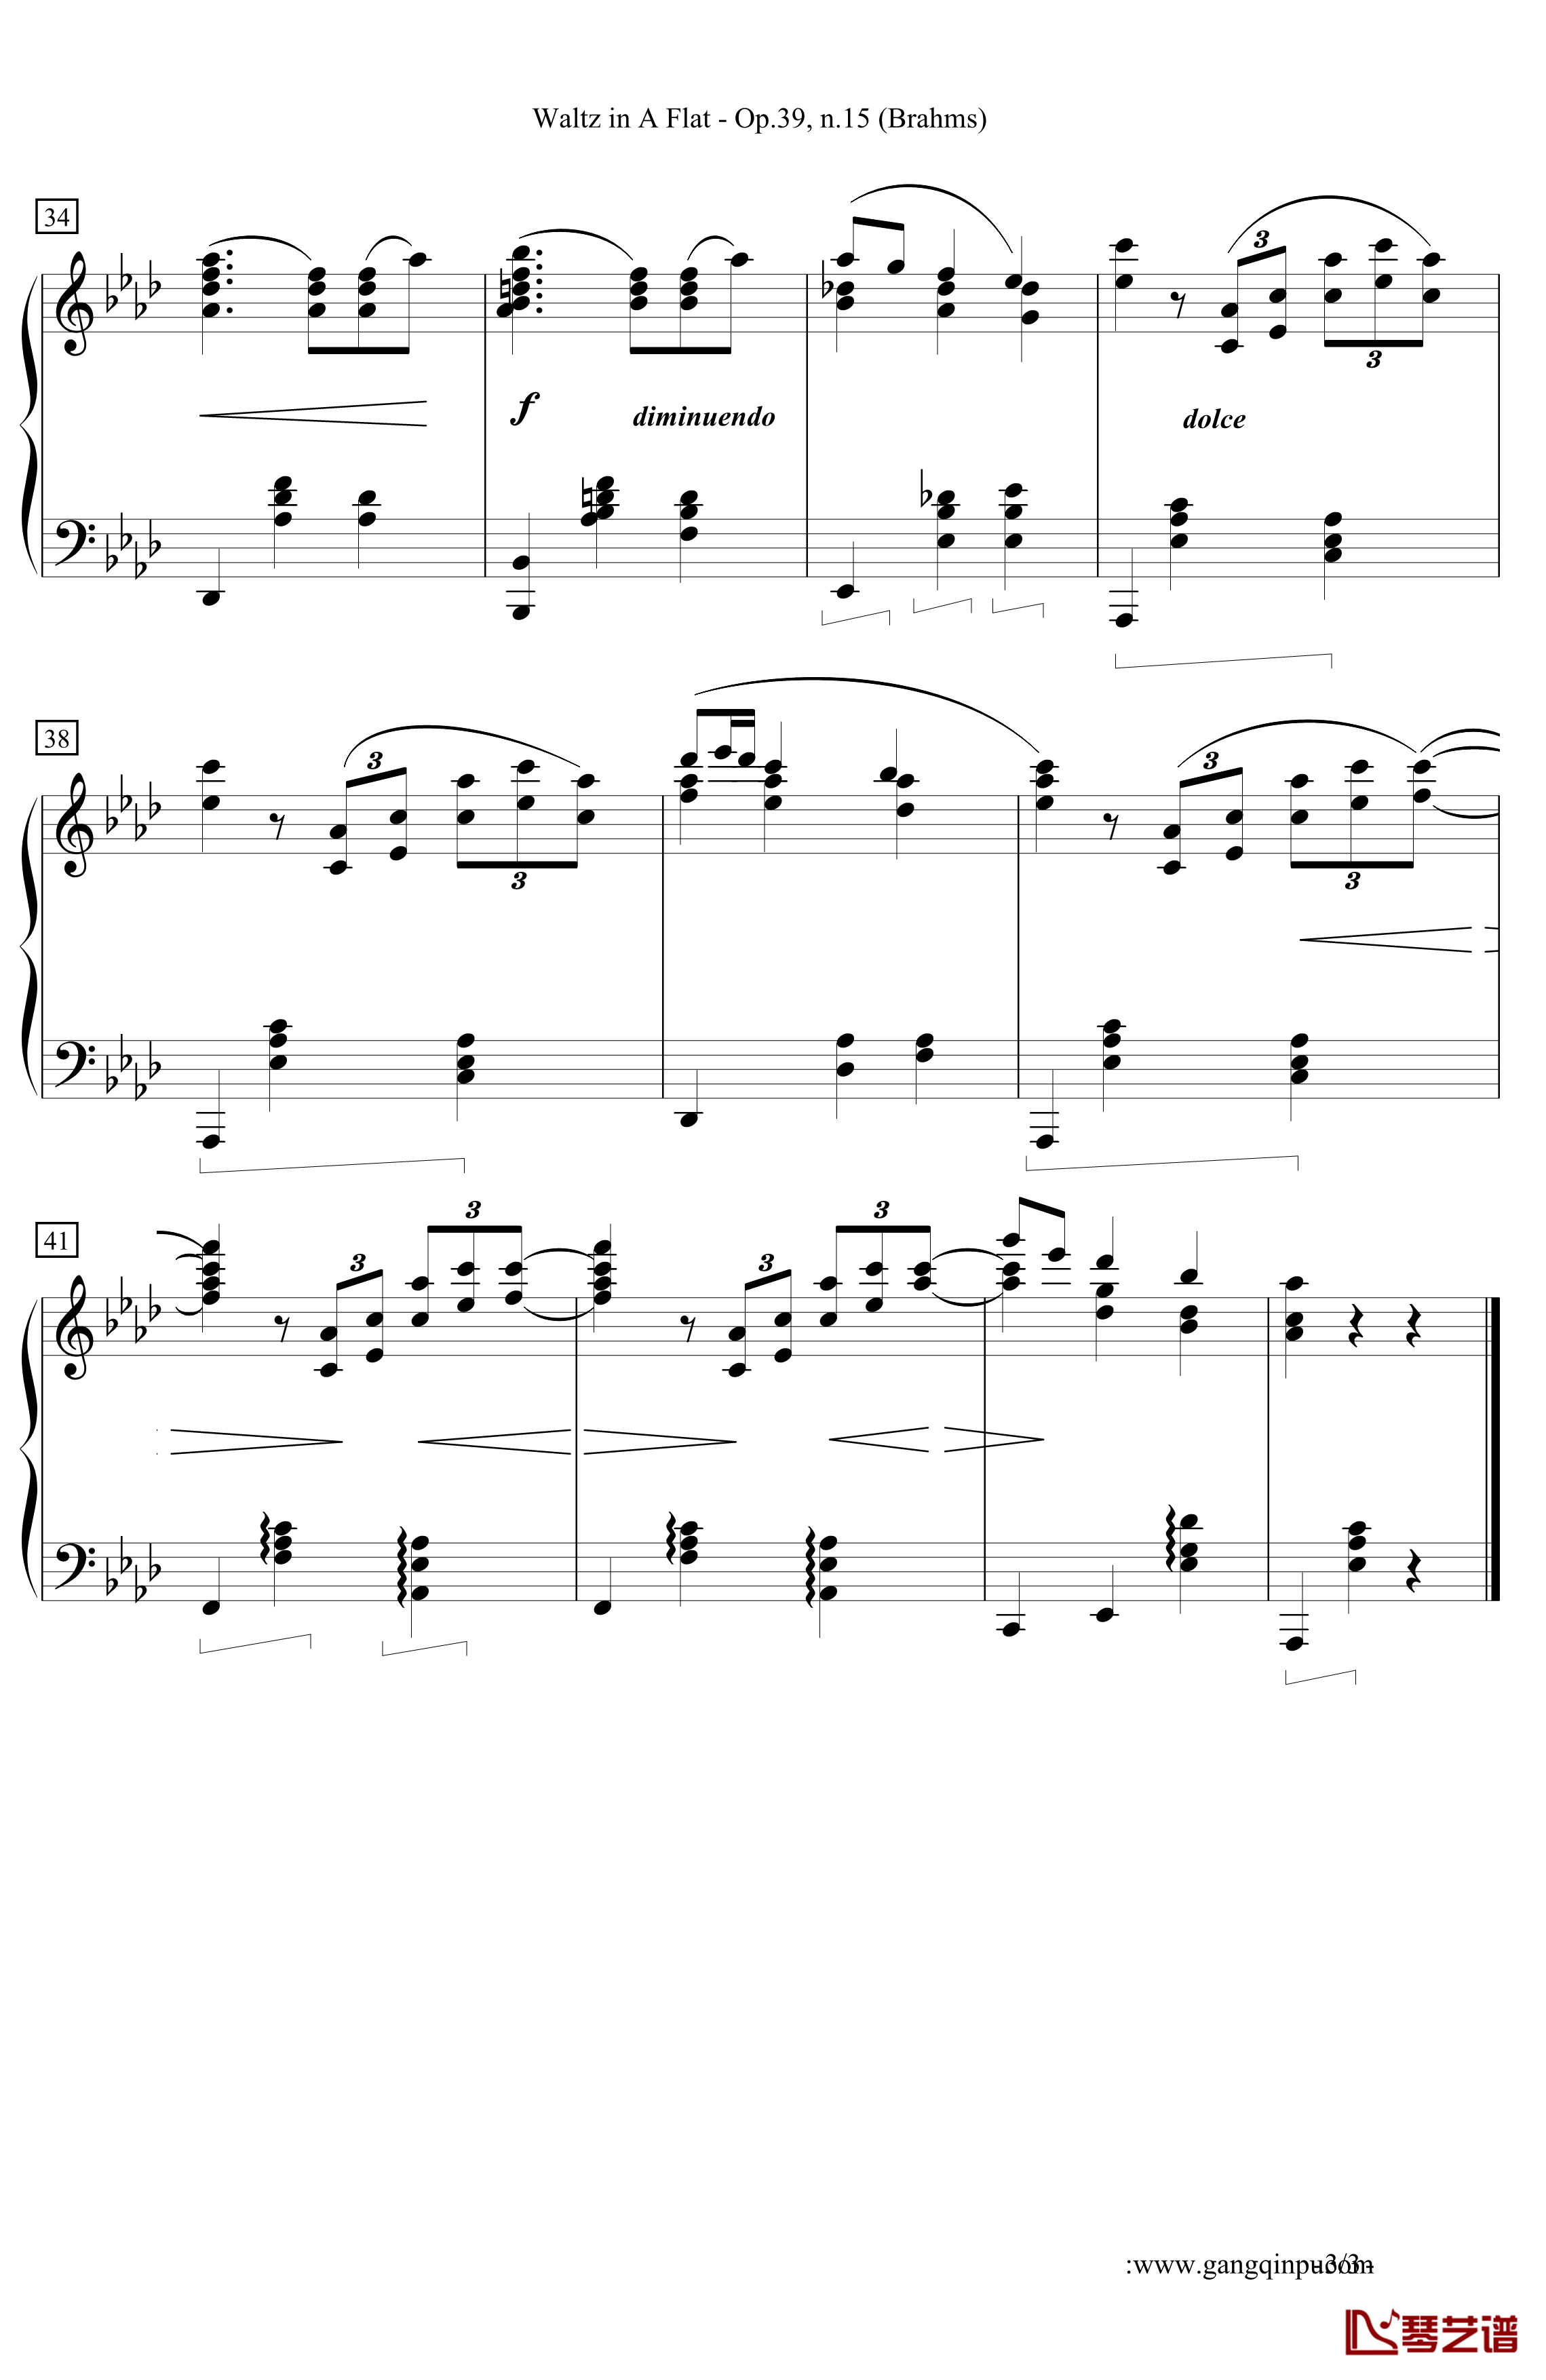 Waltz in A Flat 钢琴谱-降A大调圆舞曲-勃拉姆斯-Brahms3